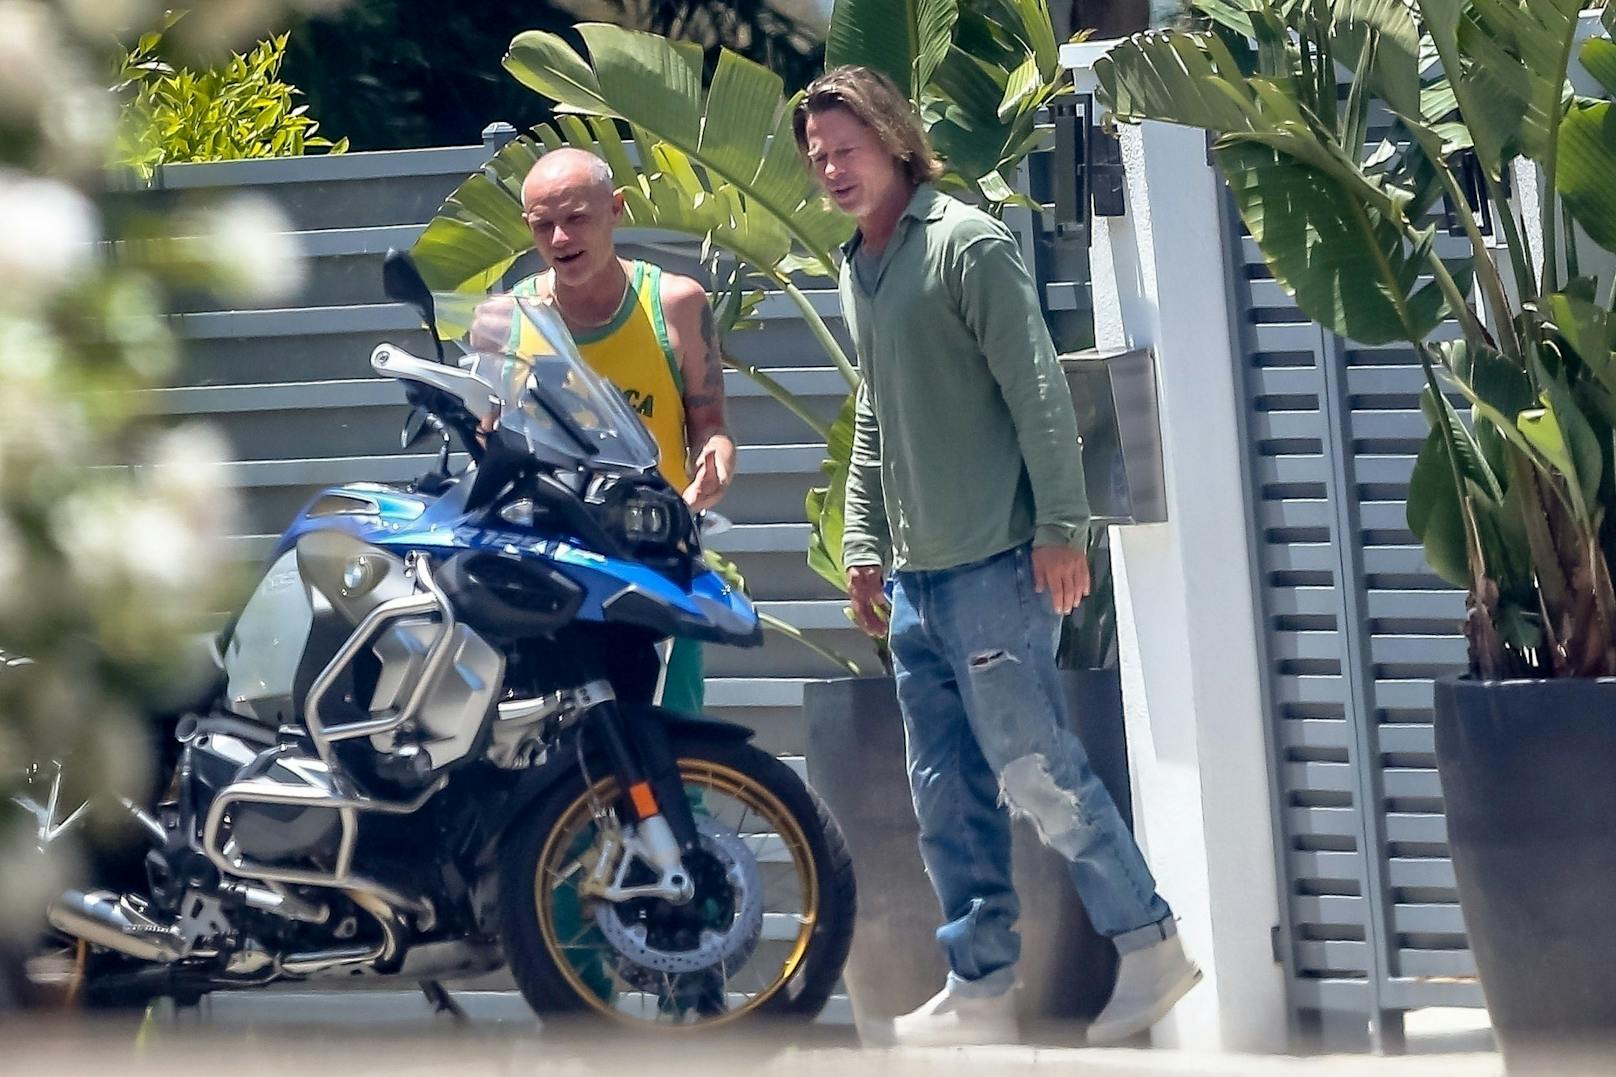 27.5.2020: Zwei Buben und ihr Spielzeug: <strong>Flea von den Red Hot Chili Peppers</strong> prahlt hier vor Motorrad-Narr Brad Pitt mit seiner neuen BMW. Brad hat sich kürzlich erst selbst zwei neue Motorräder gekauft. Vielleicht steht bald auch ein paar bayerische Pferdestärken in seiner Garage